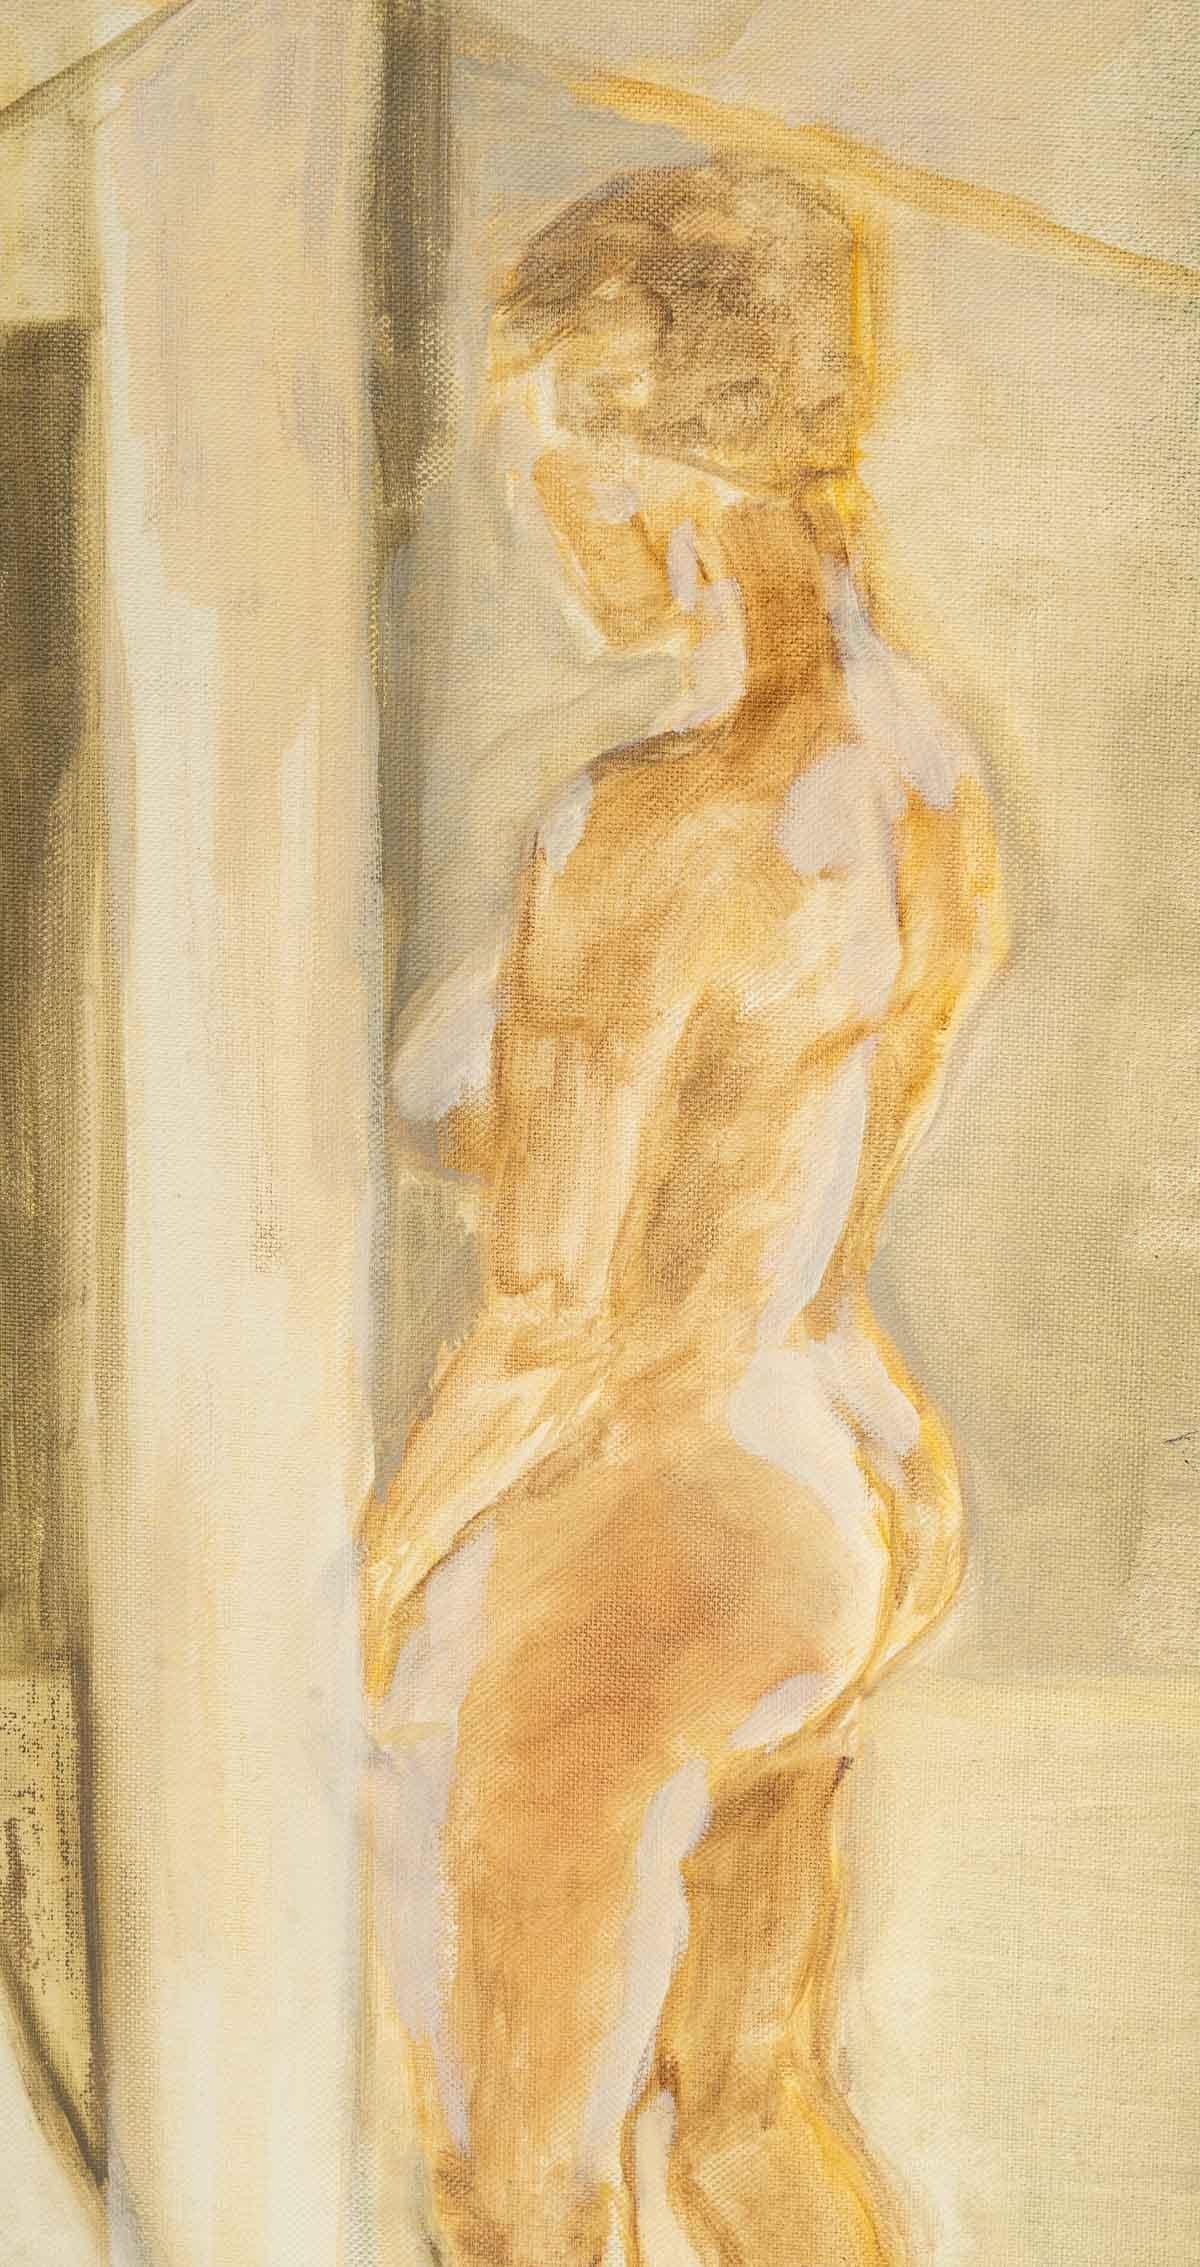 Femme nue se regardant dans un miroir, peinture sur Masonite, 20e siècle.
Evelyne Luez, Ecole de Paris.
Mesures : H : 46 cm, L : 38 cm, P : 0,5 cm.